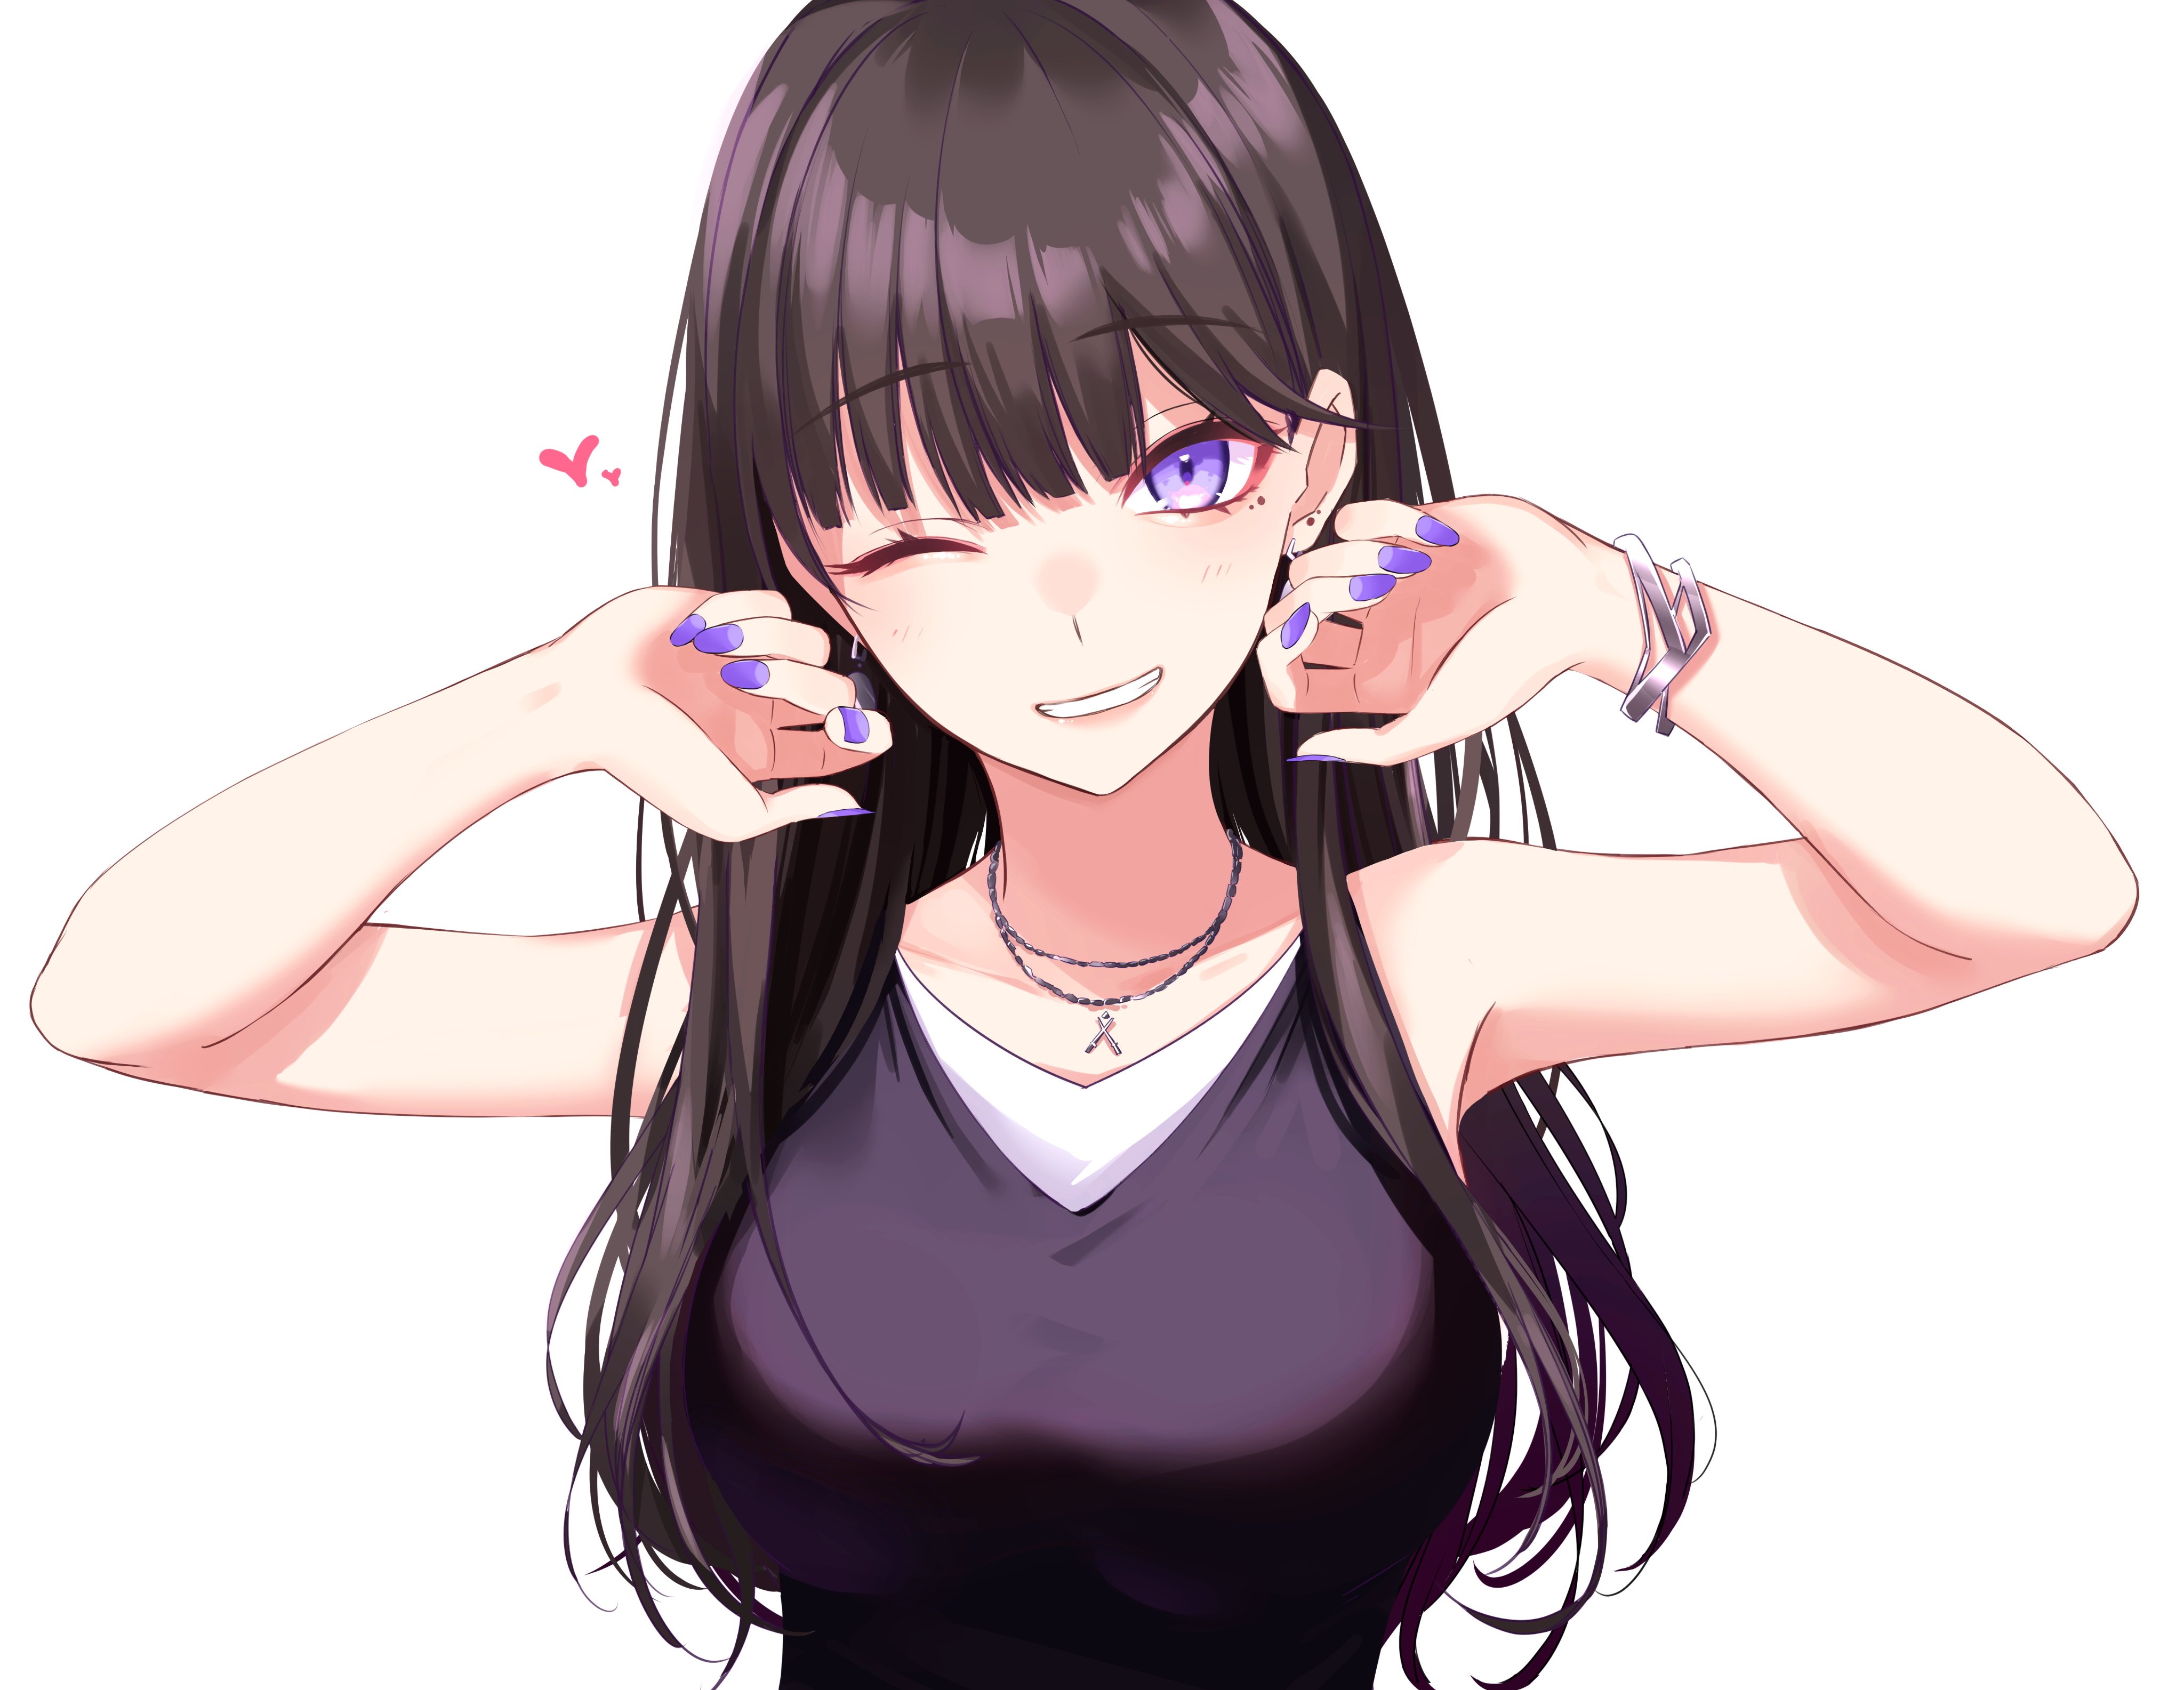 Anime 4096x3170 white background anime girls artwork Ichiki 1 wink smiling purple eyes dark hair long hair big boobs